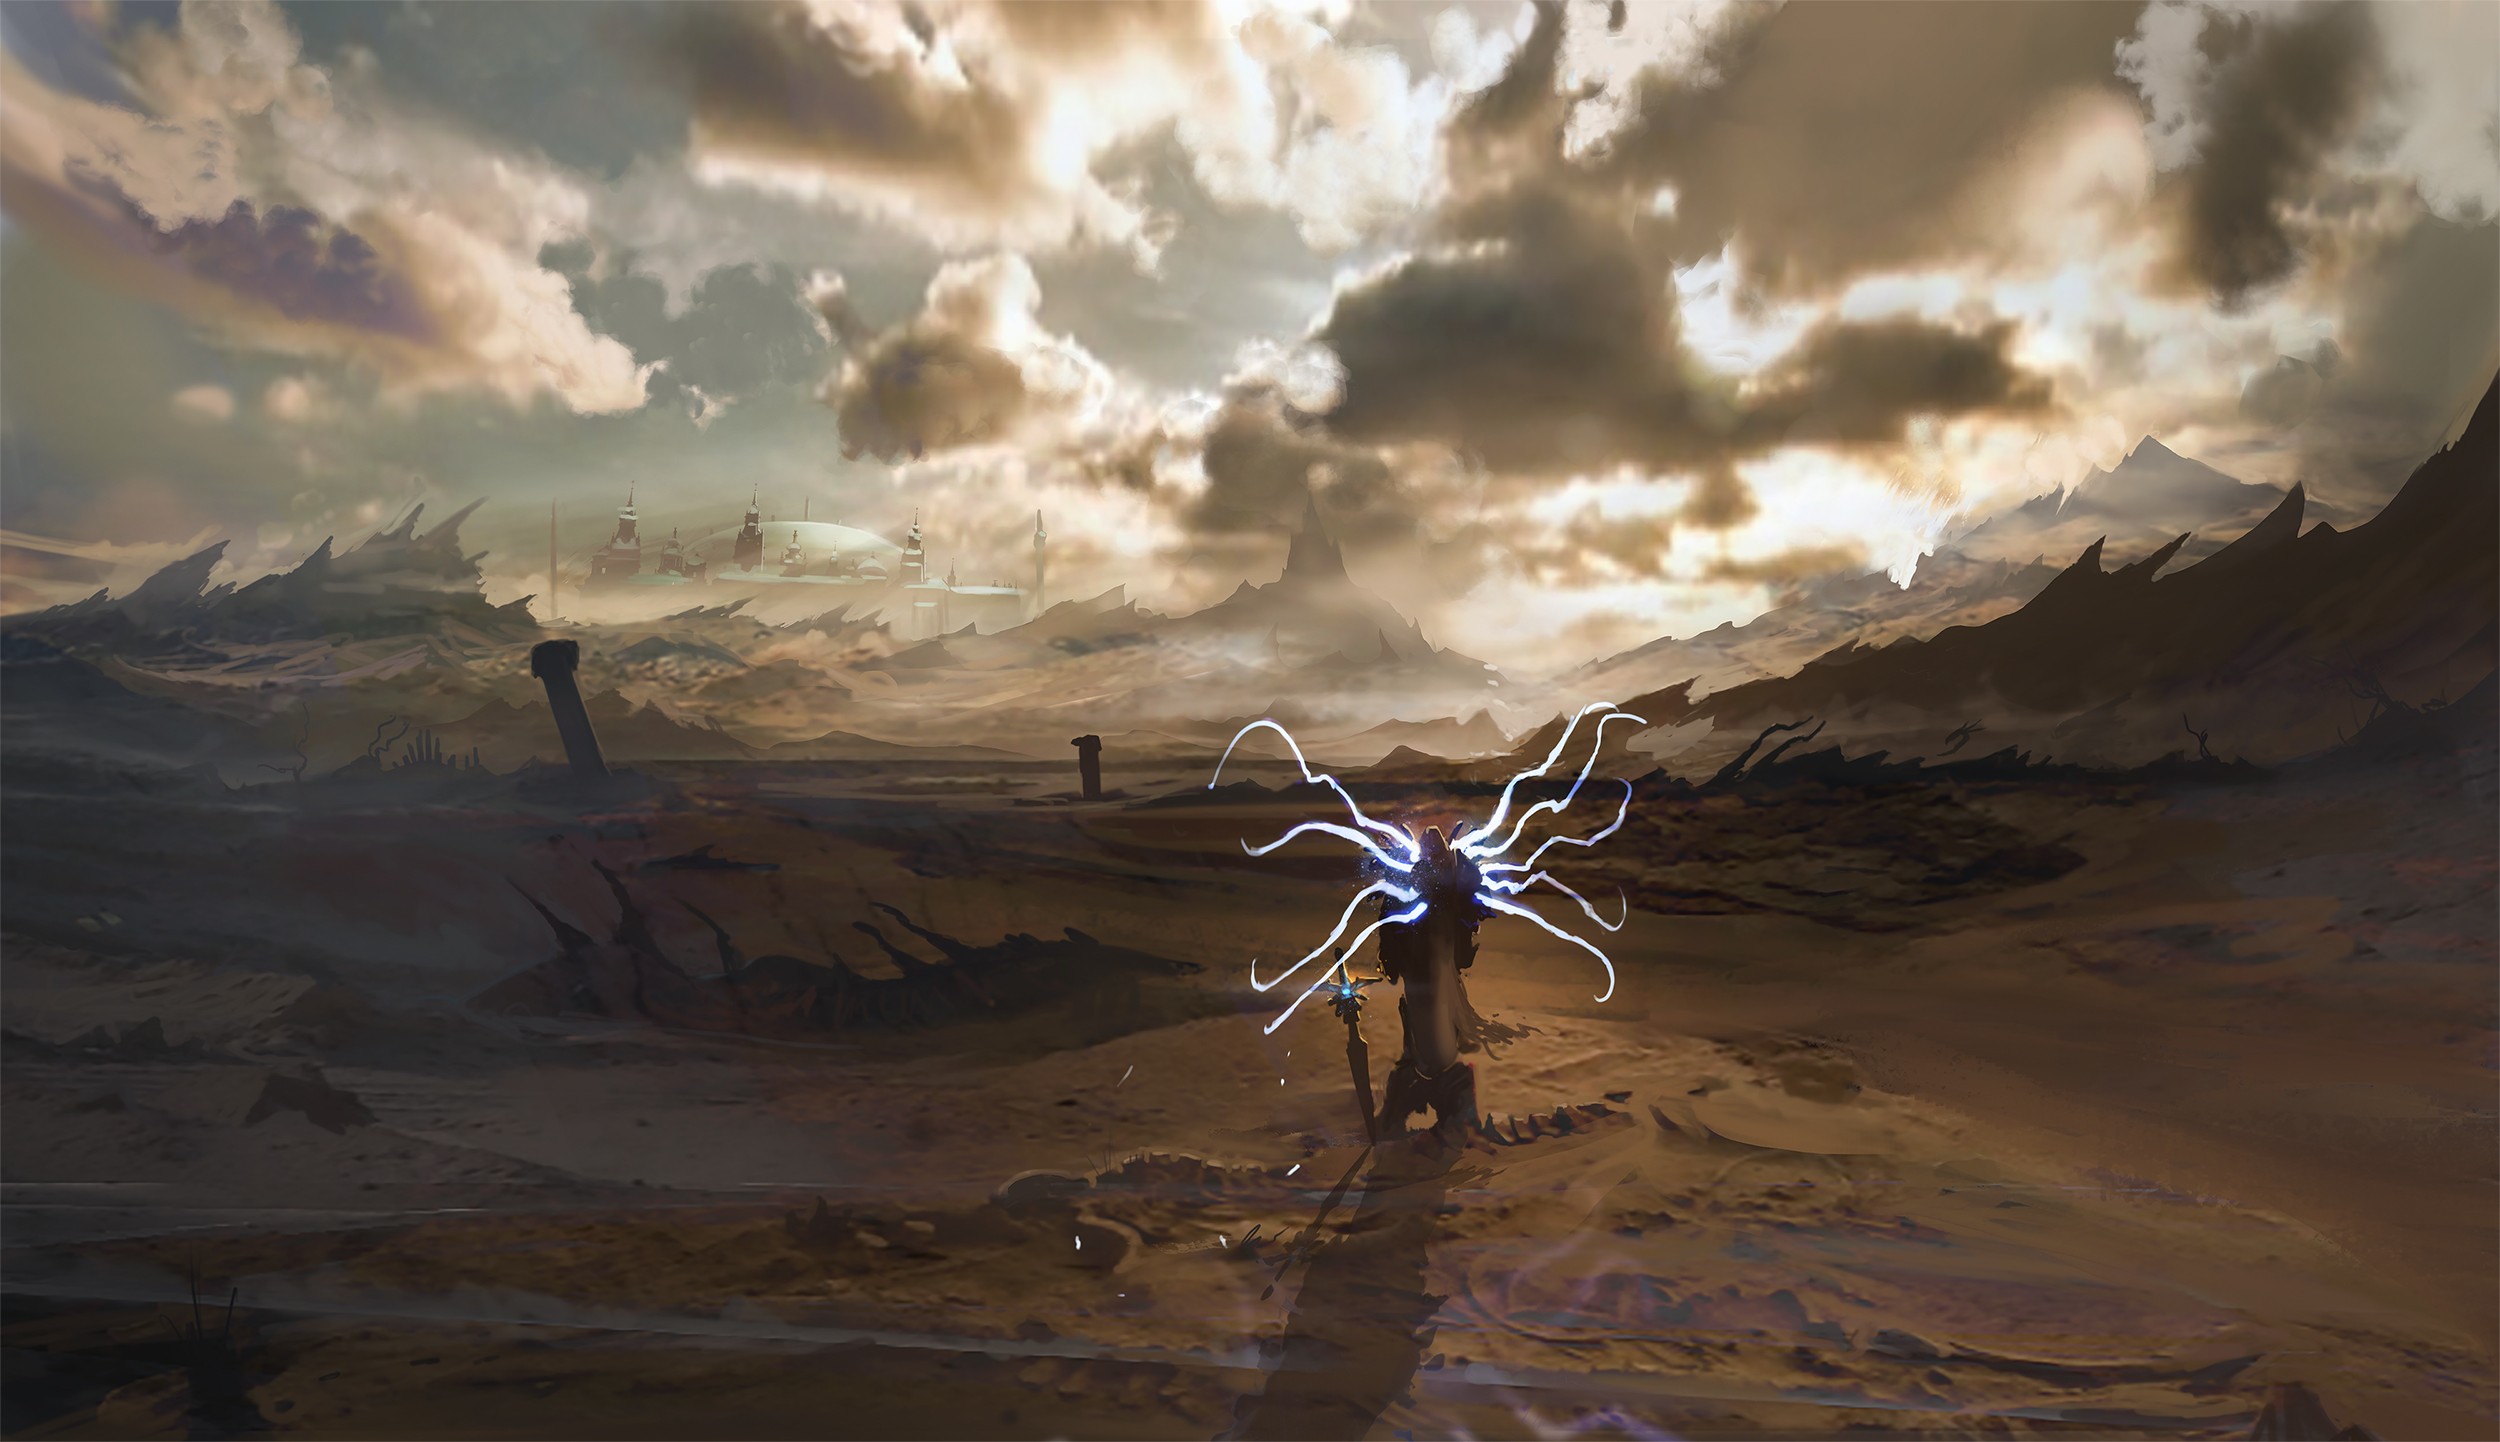 Artwork Fantasy Art Concept Art Apocalyptic Warrior Diablo Diablo Iii Video Games Tyrael Digital Art 2500x1442